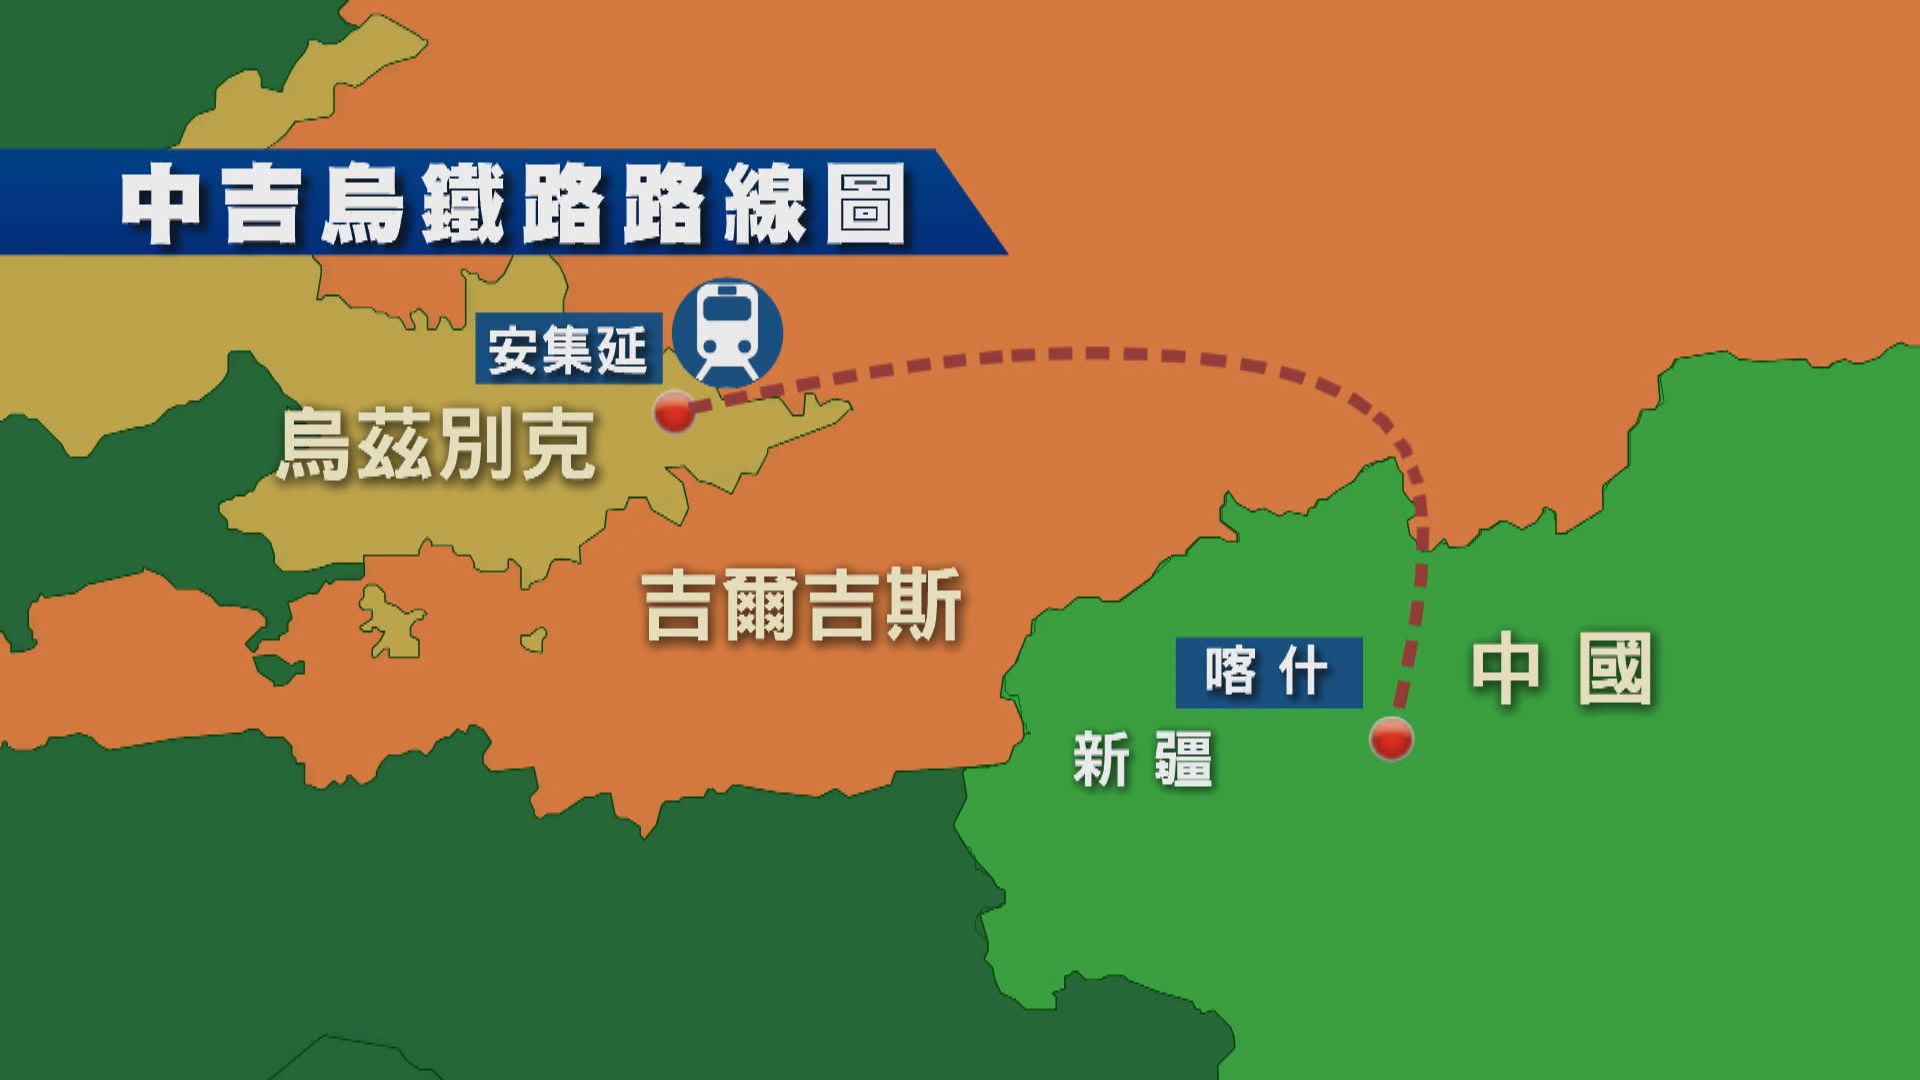 中吉烏鐵路項目三國政府間協定在北京簽署